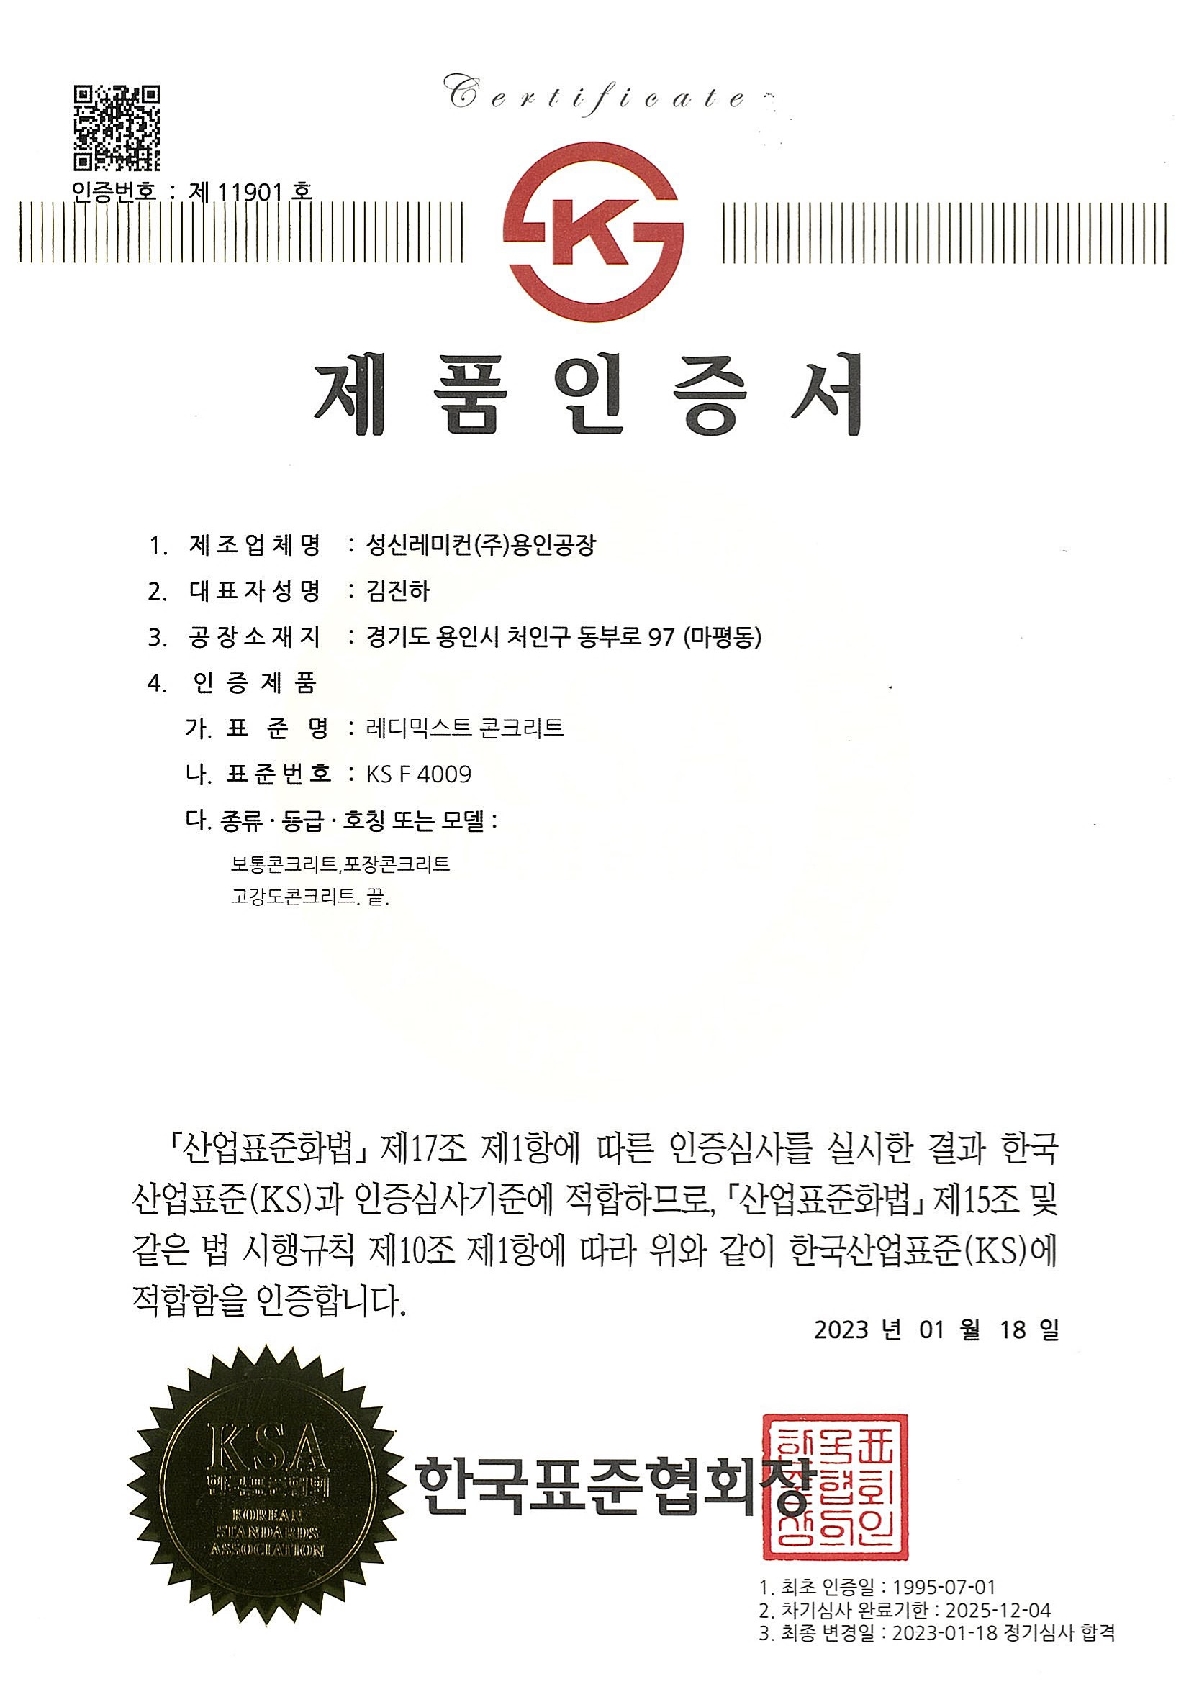 성신레미컨(주)용인공장ks제품인증서.jpg